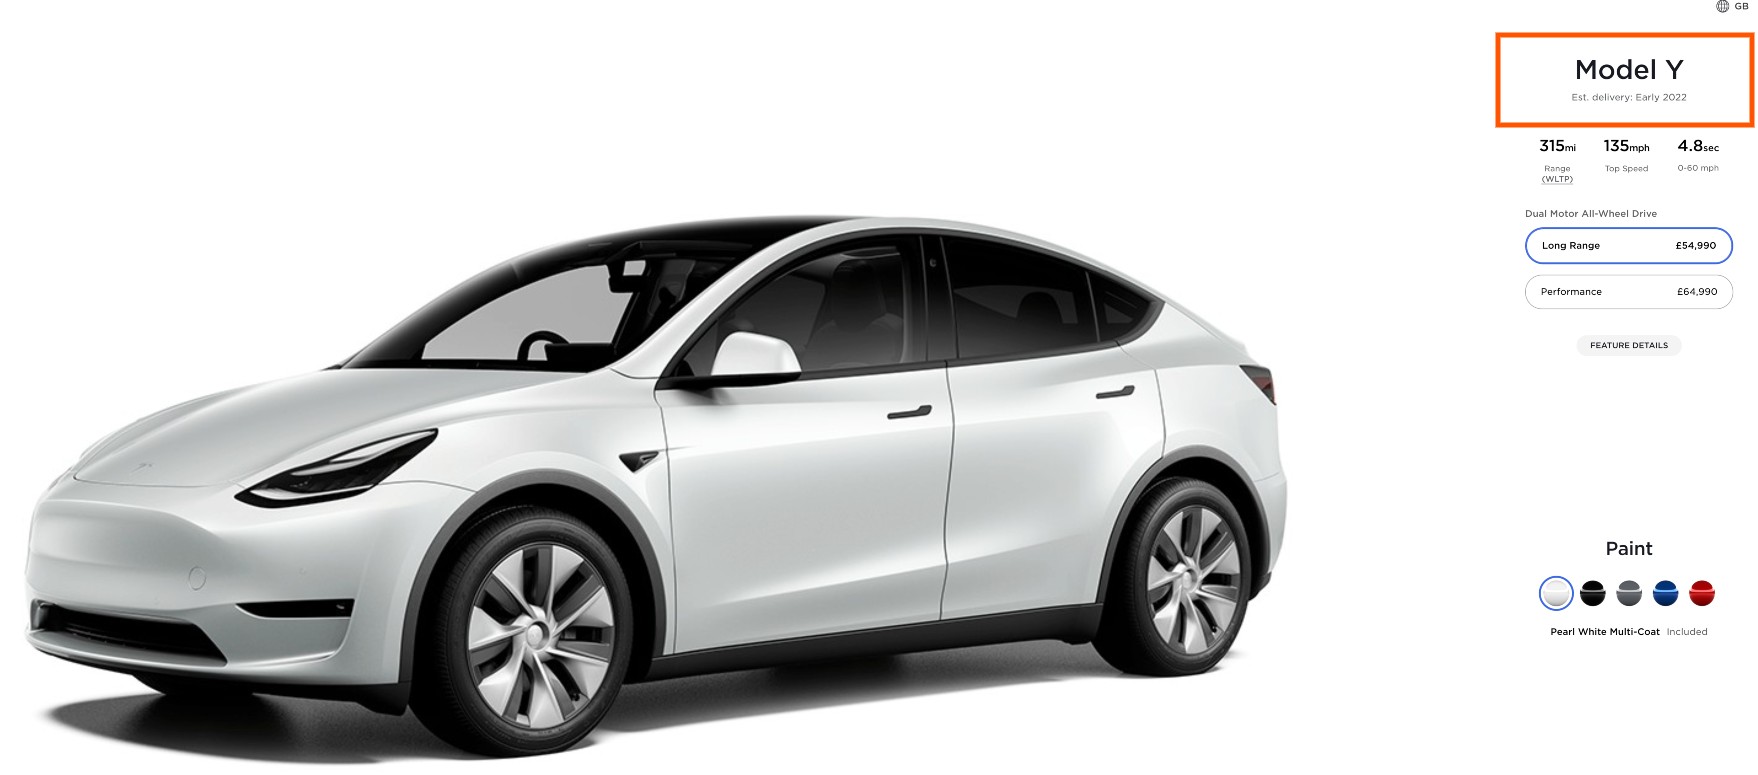 Tesla открывает дизайн-студию Model Y для Великобритании